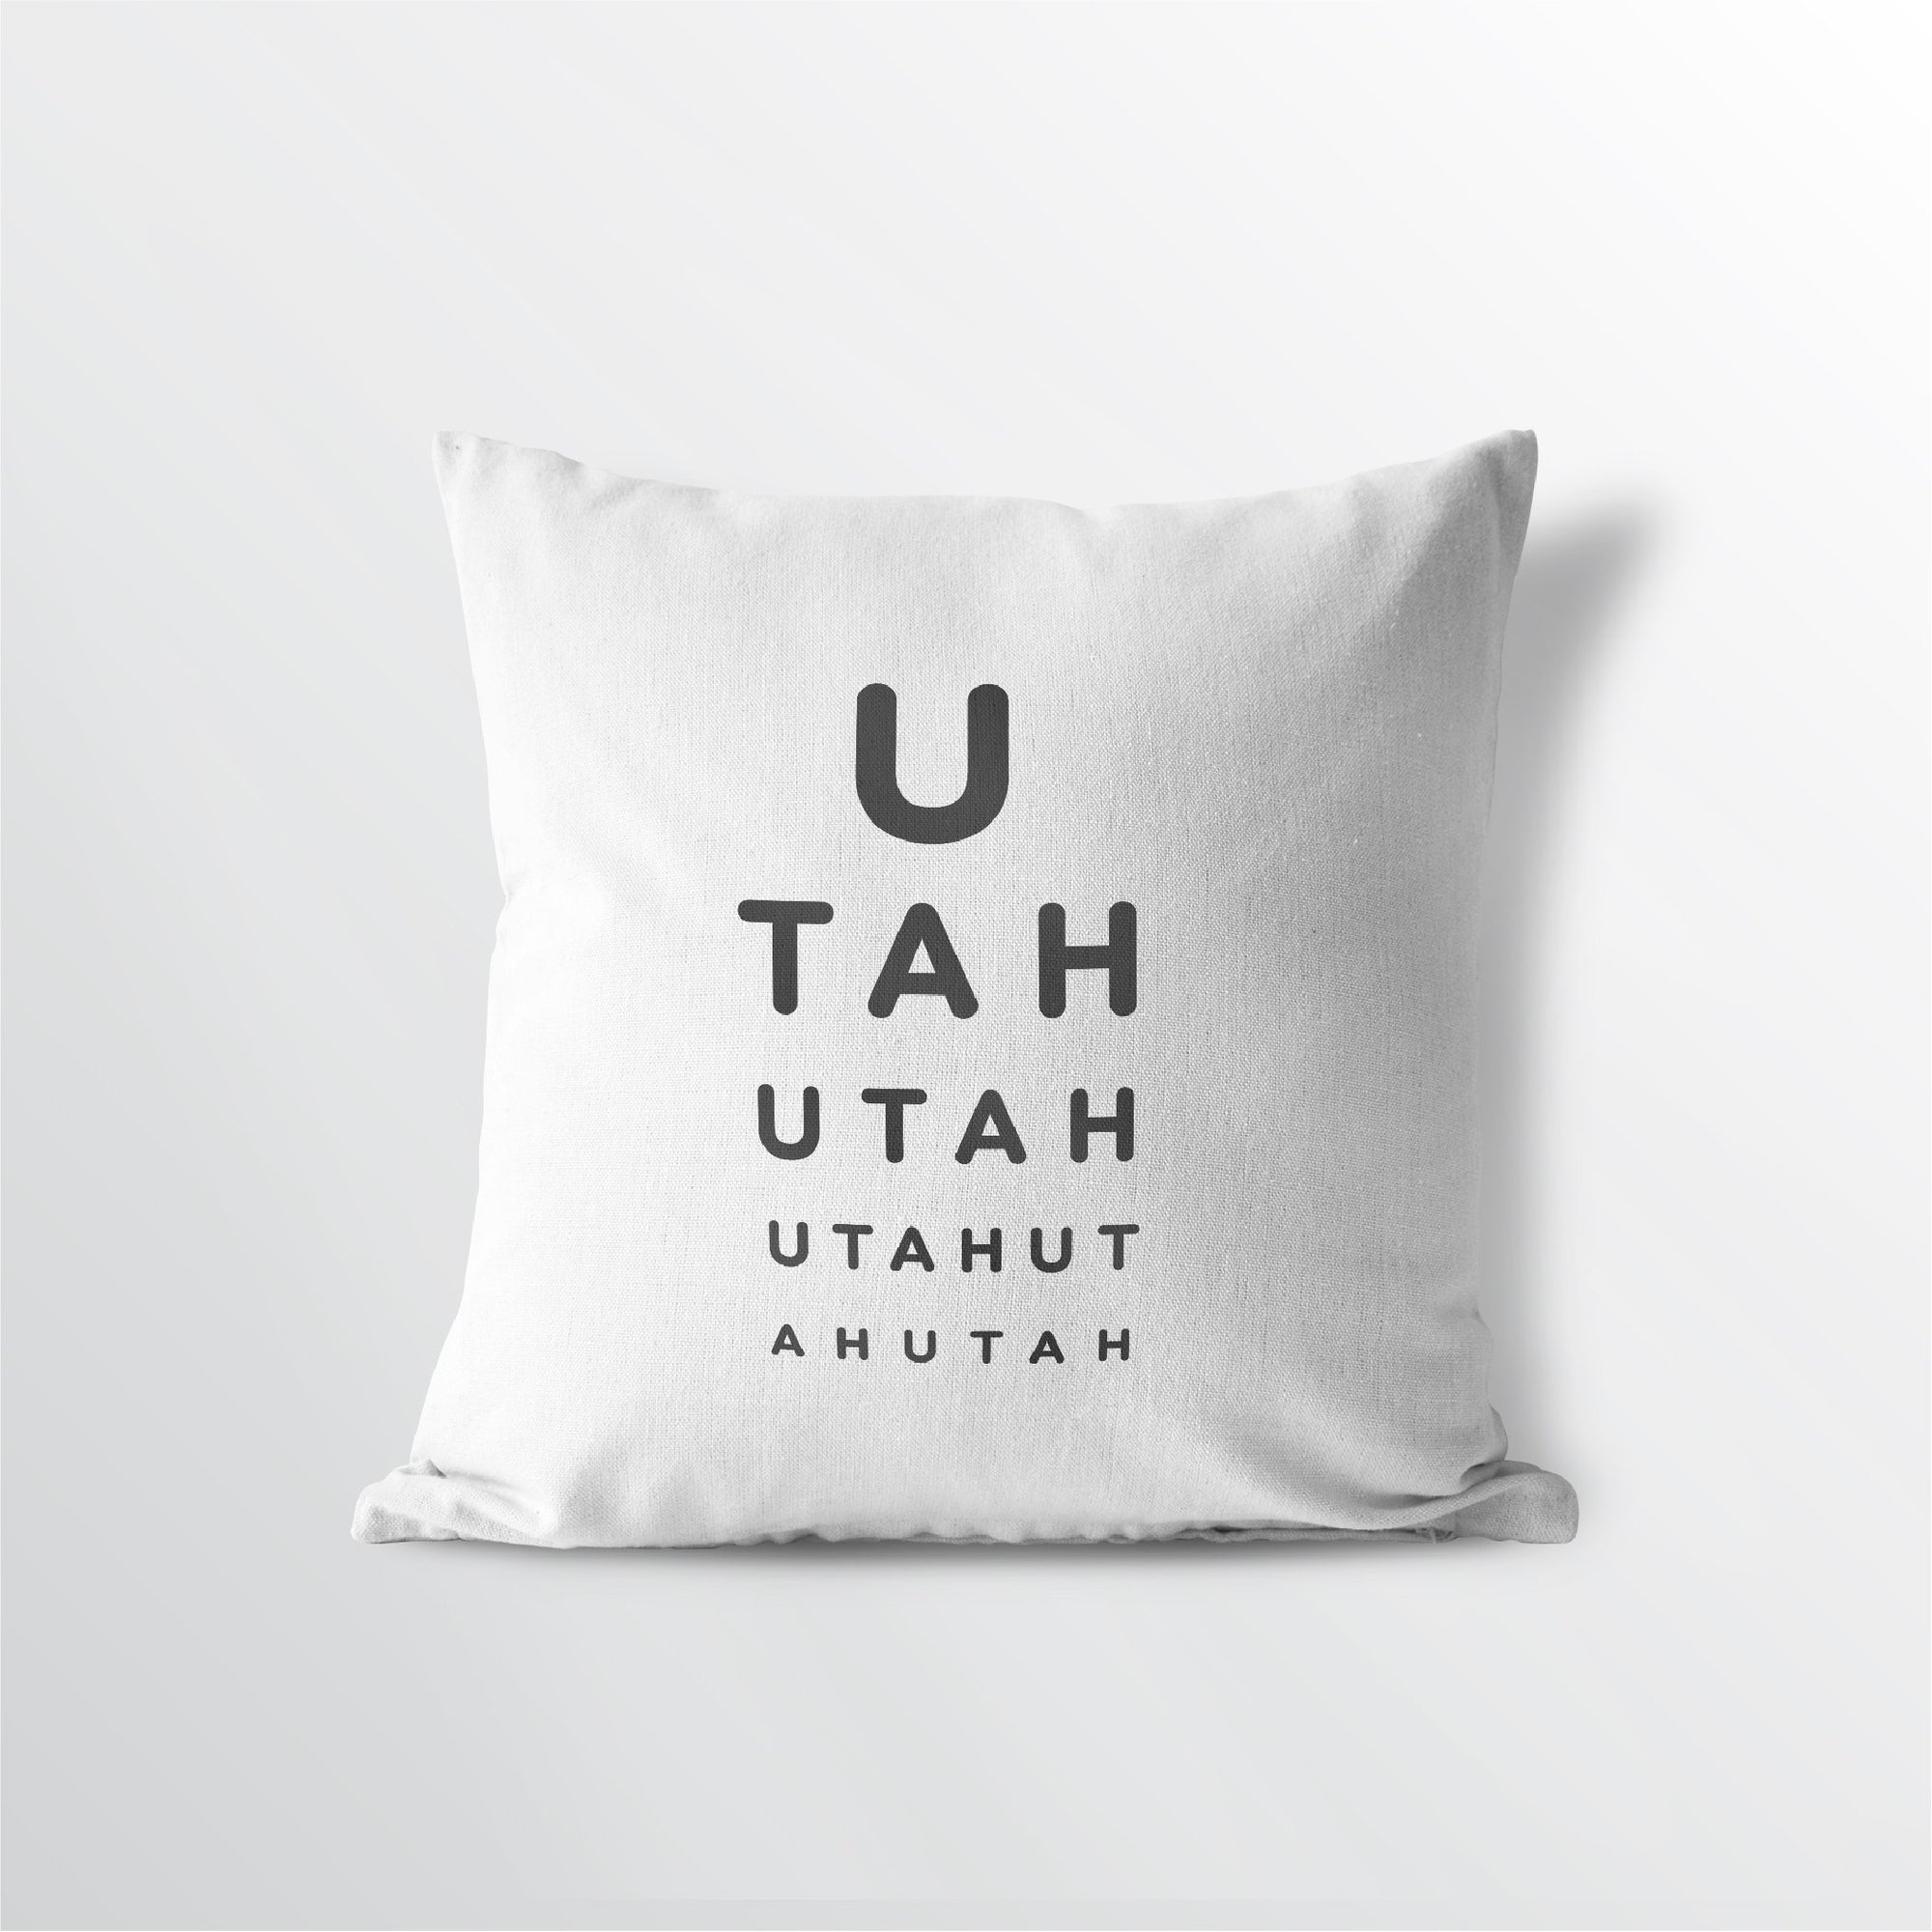 Utah "Eye Exam" Throw Pillow